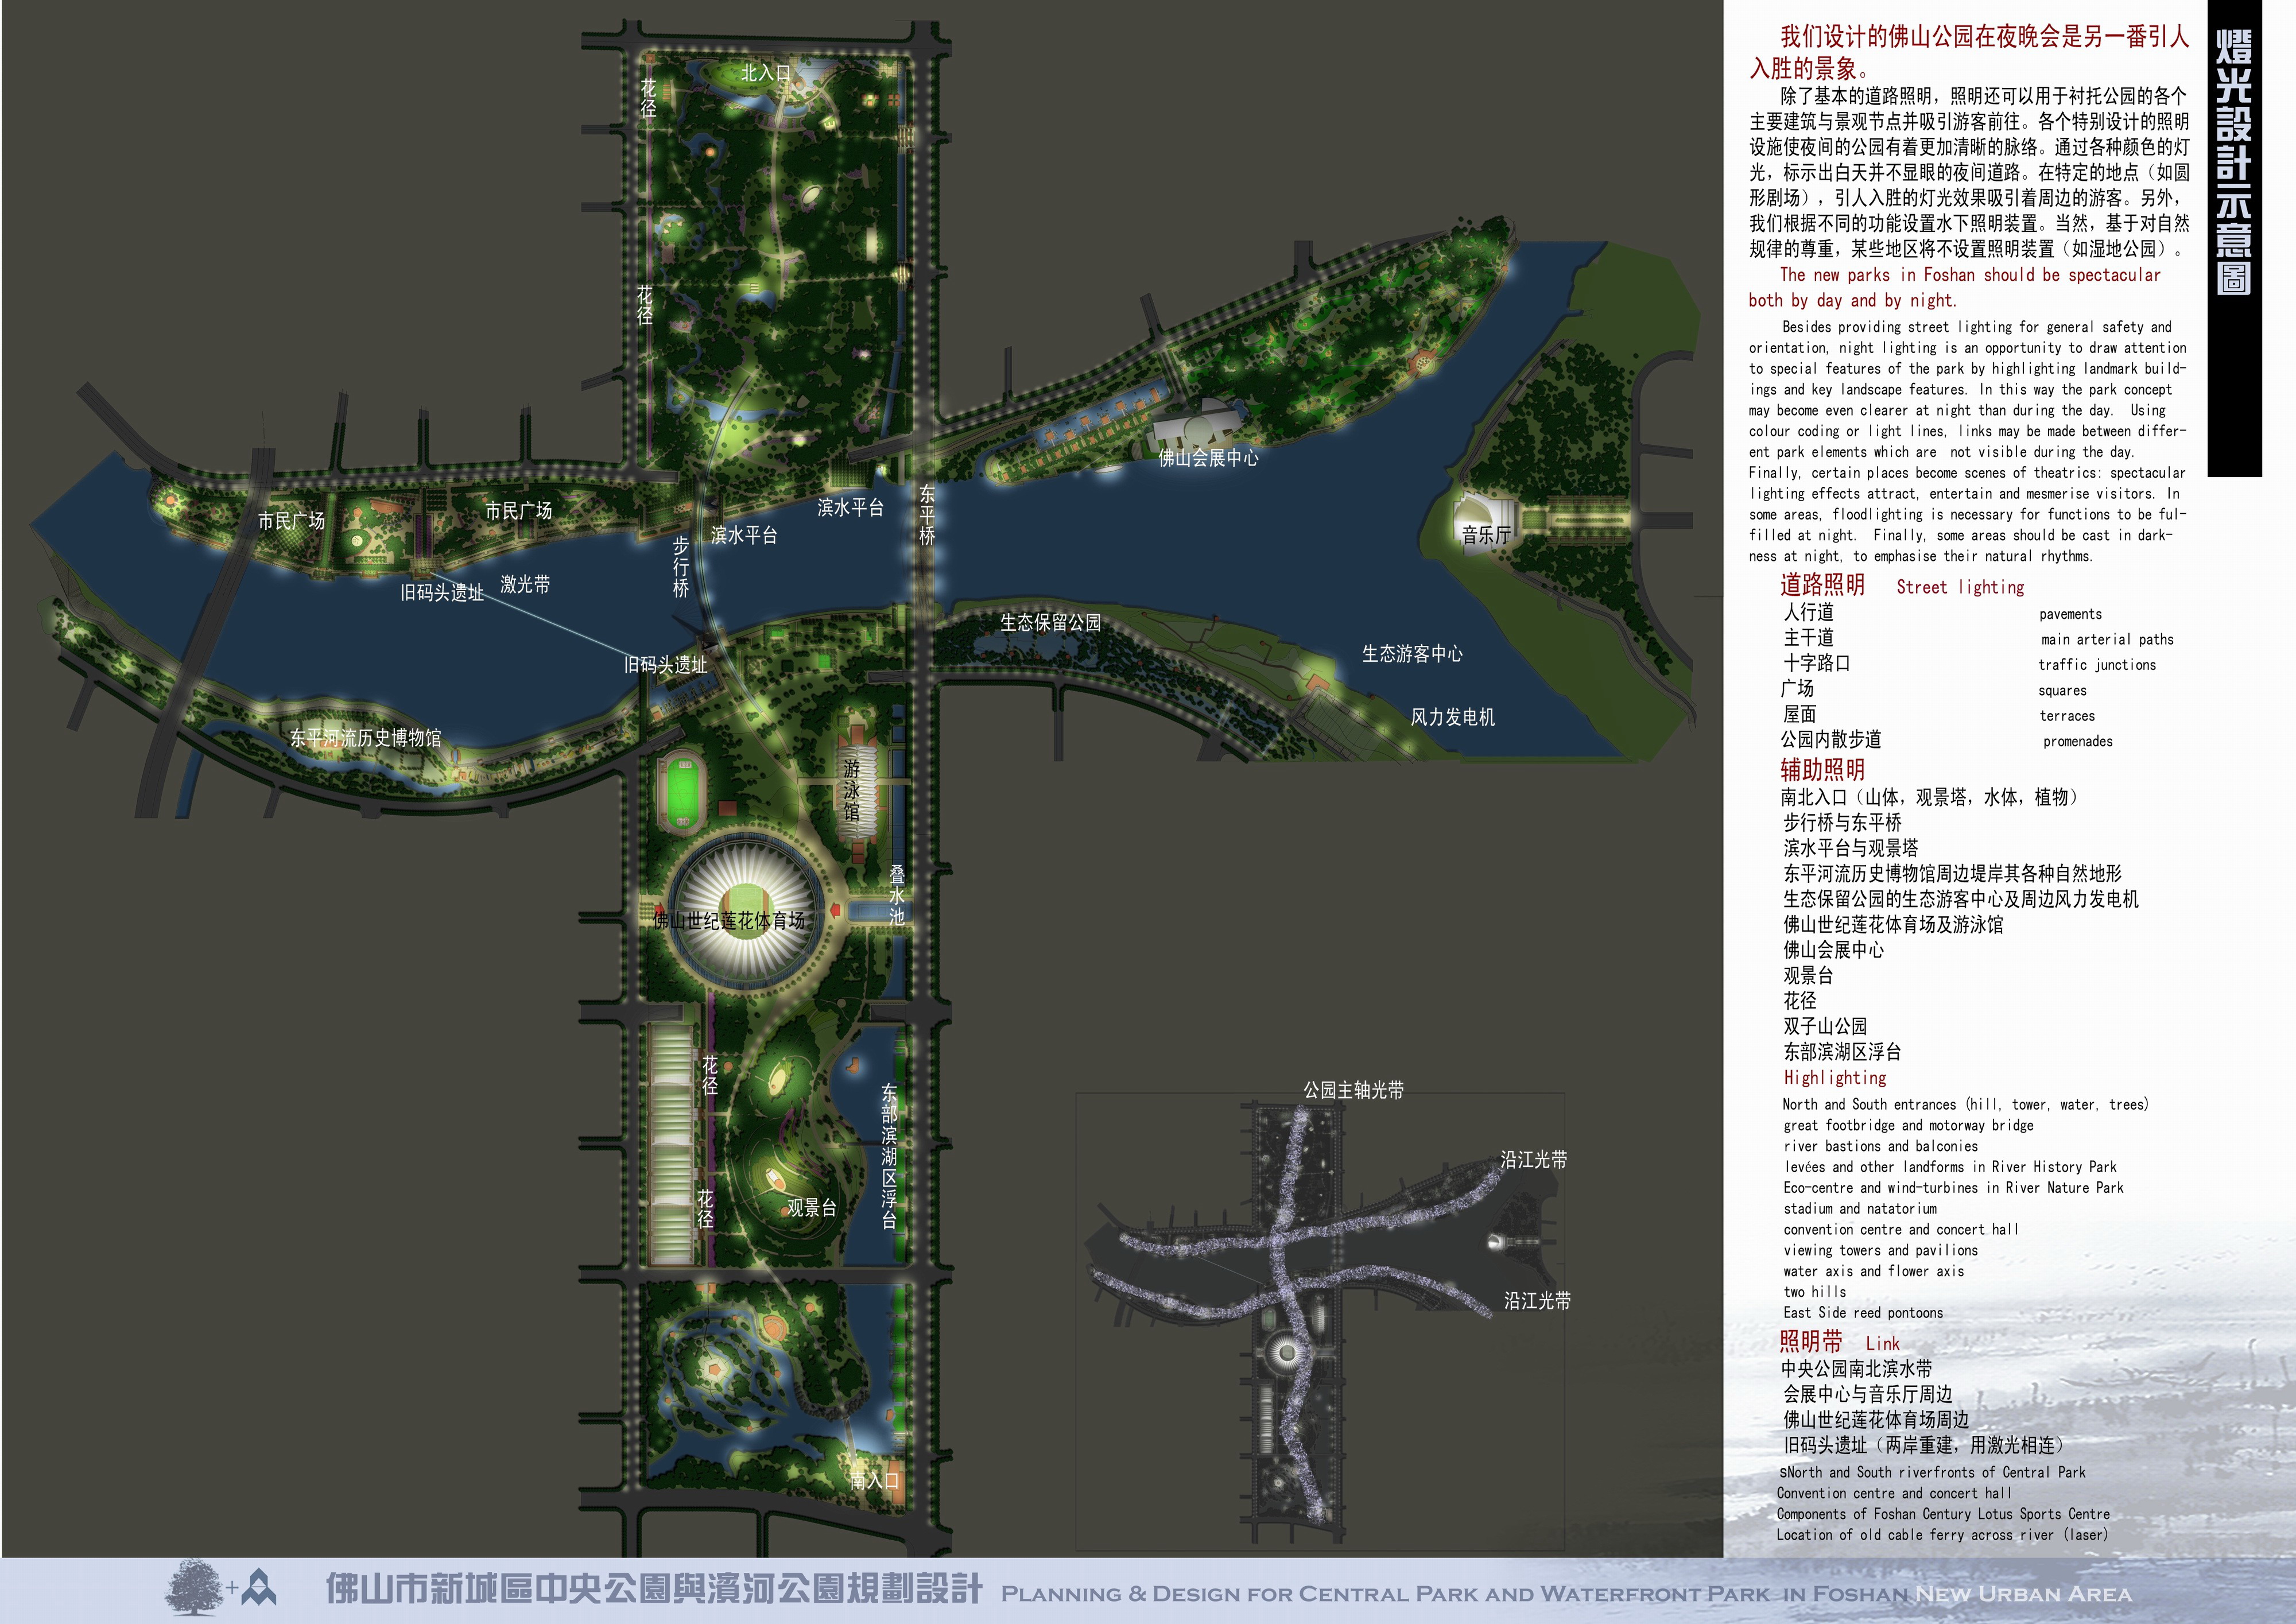 [施里克&华南理工]佛山市中央公园及滨河公园规划设计